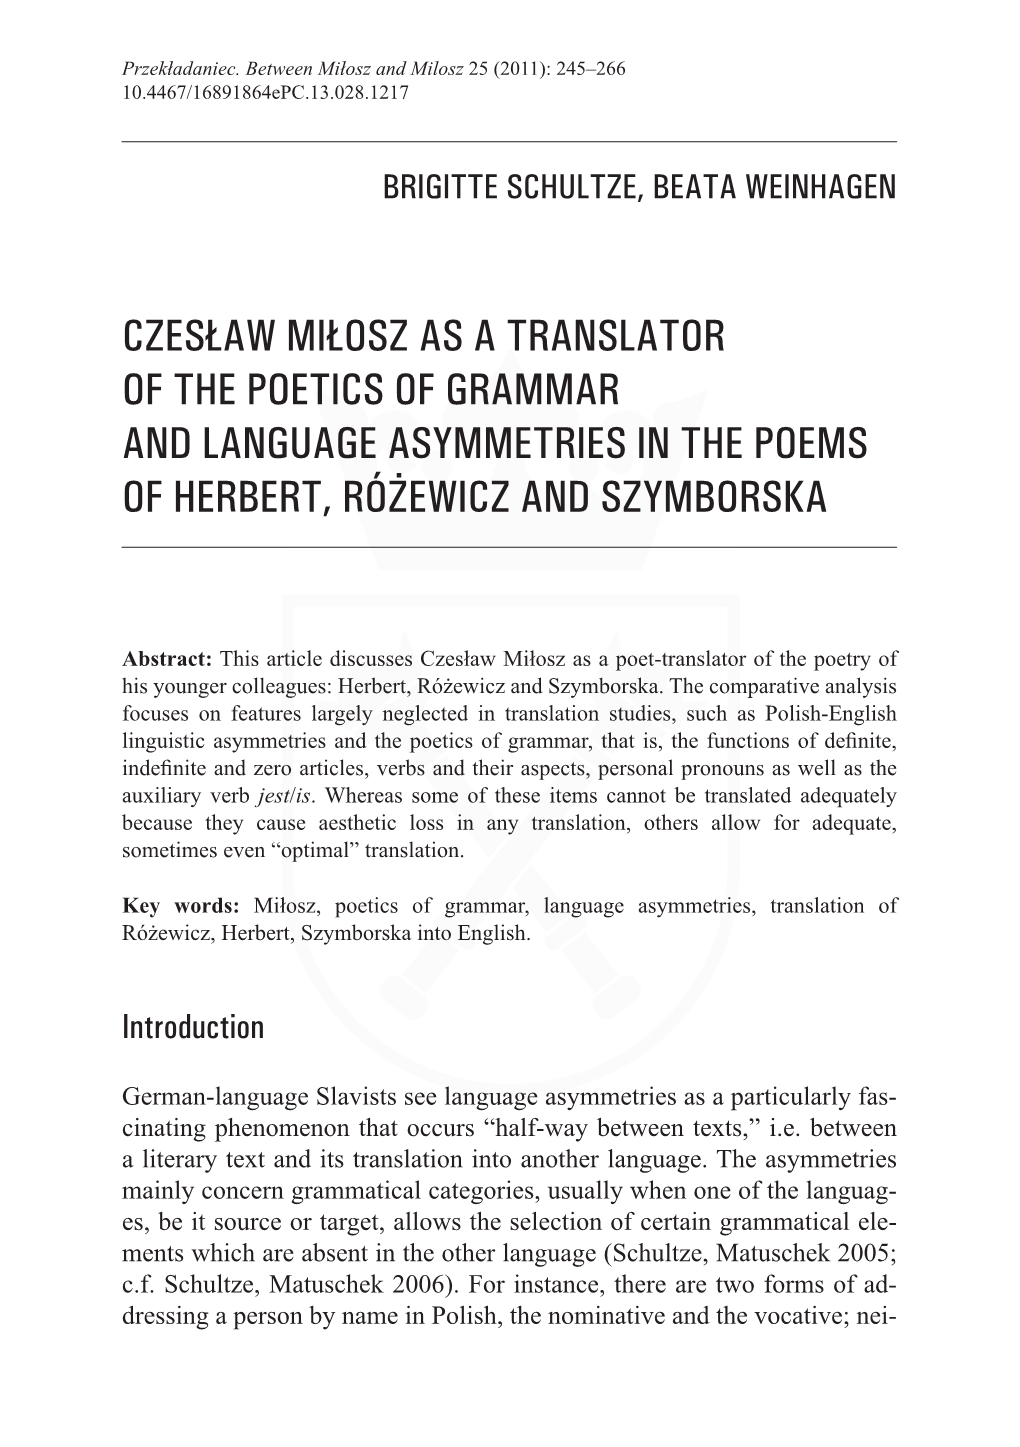 Czesław Miłosz As a Translator of the Poetics of Grammar and Language Asymmetries in the Poems of Herbert, Różewicz and Szymborska